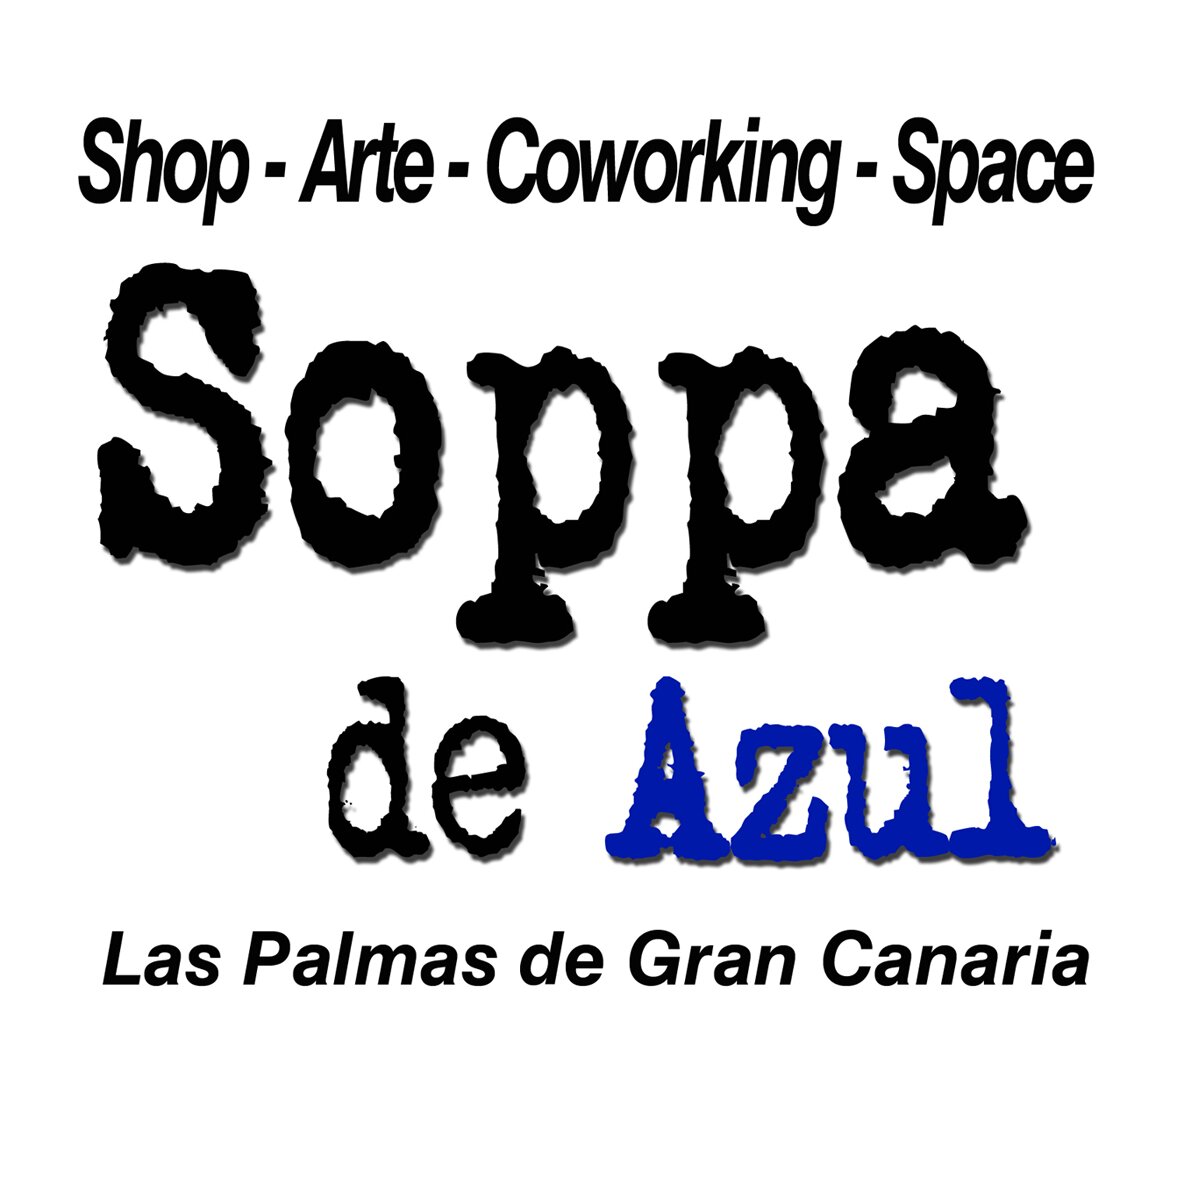 Galería de Arte y co-working creativo.